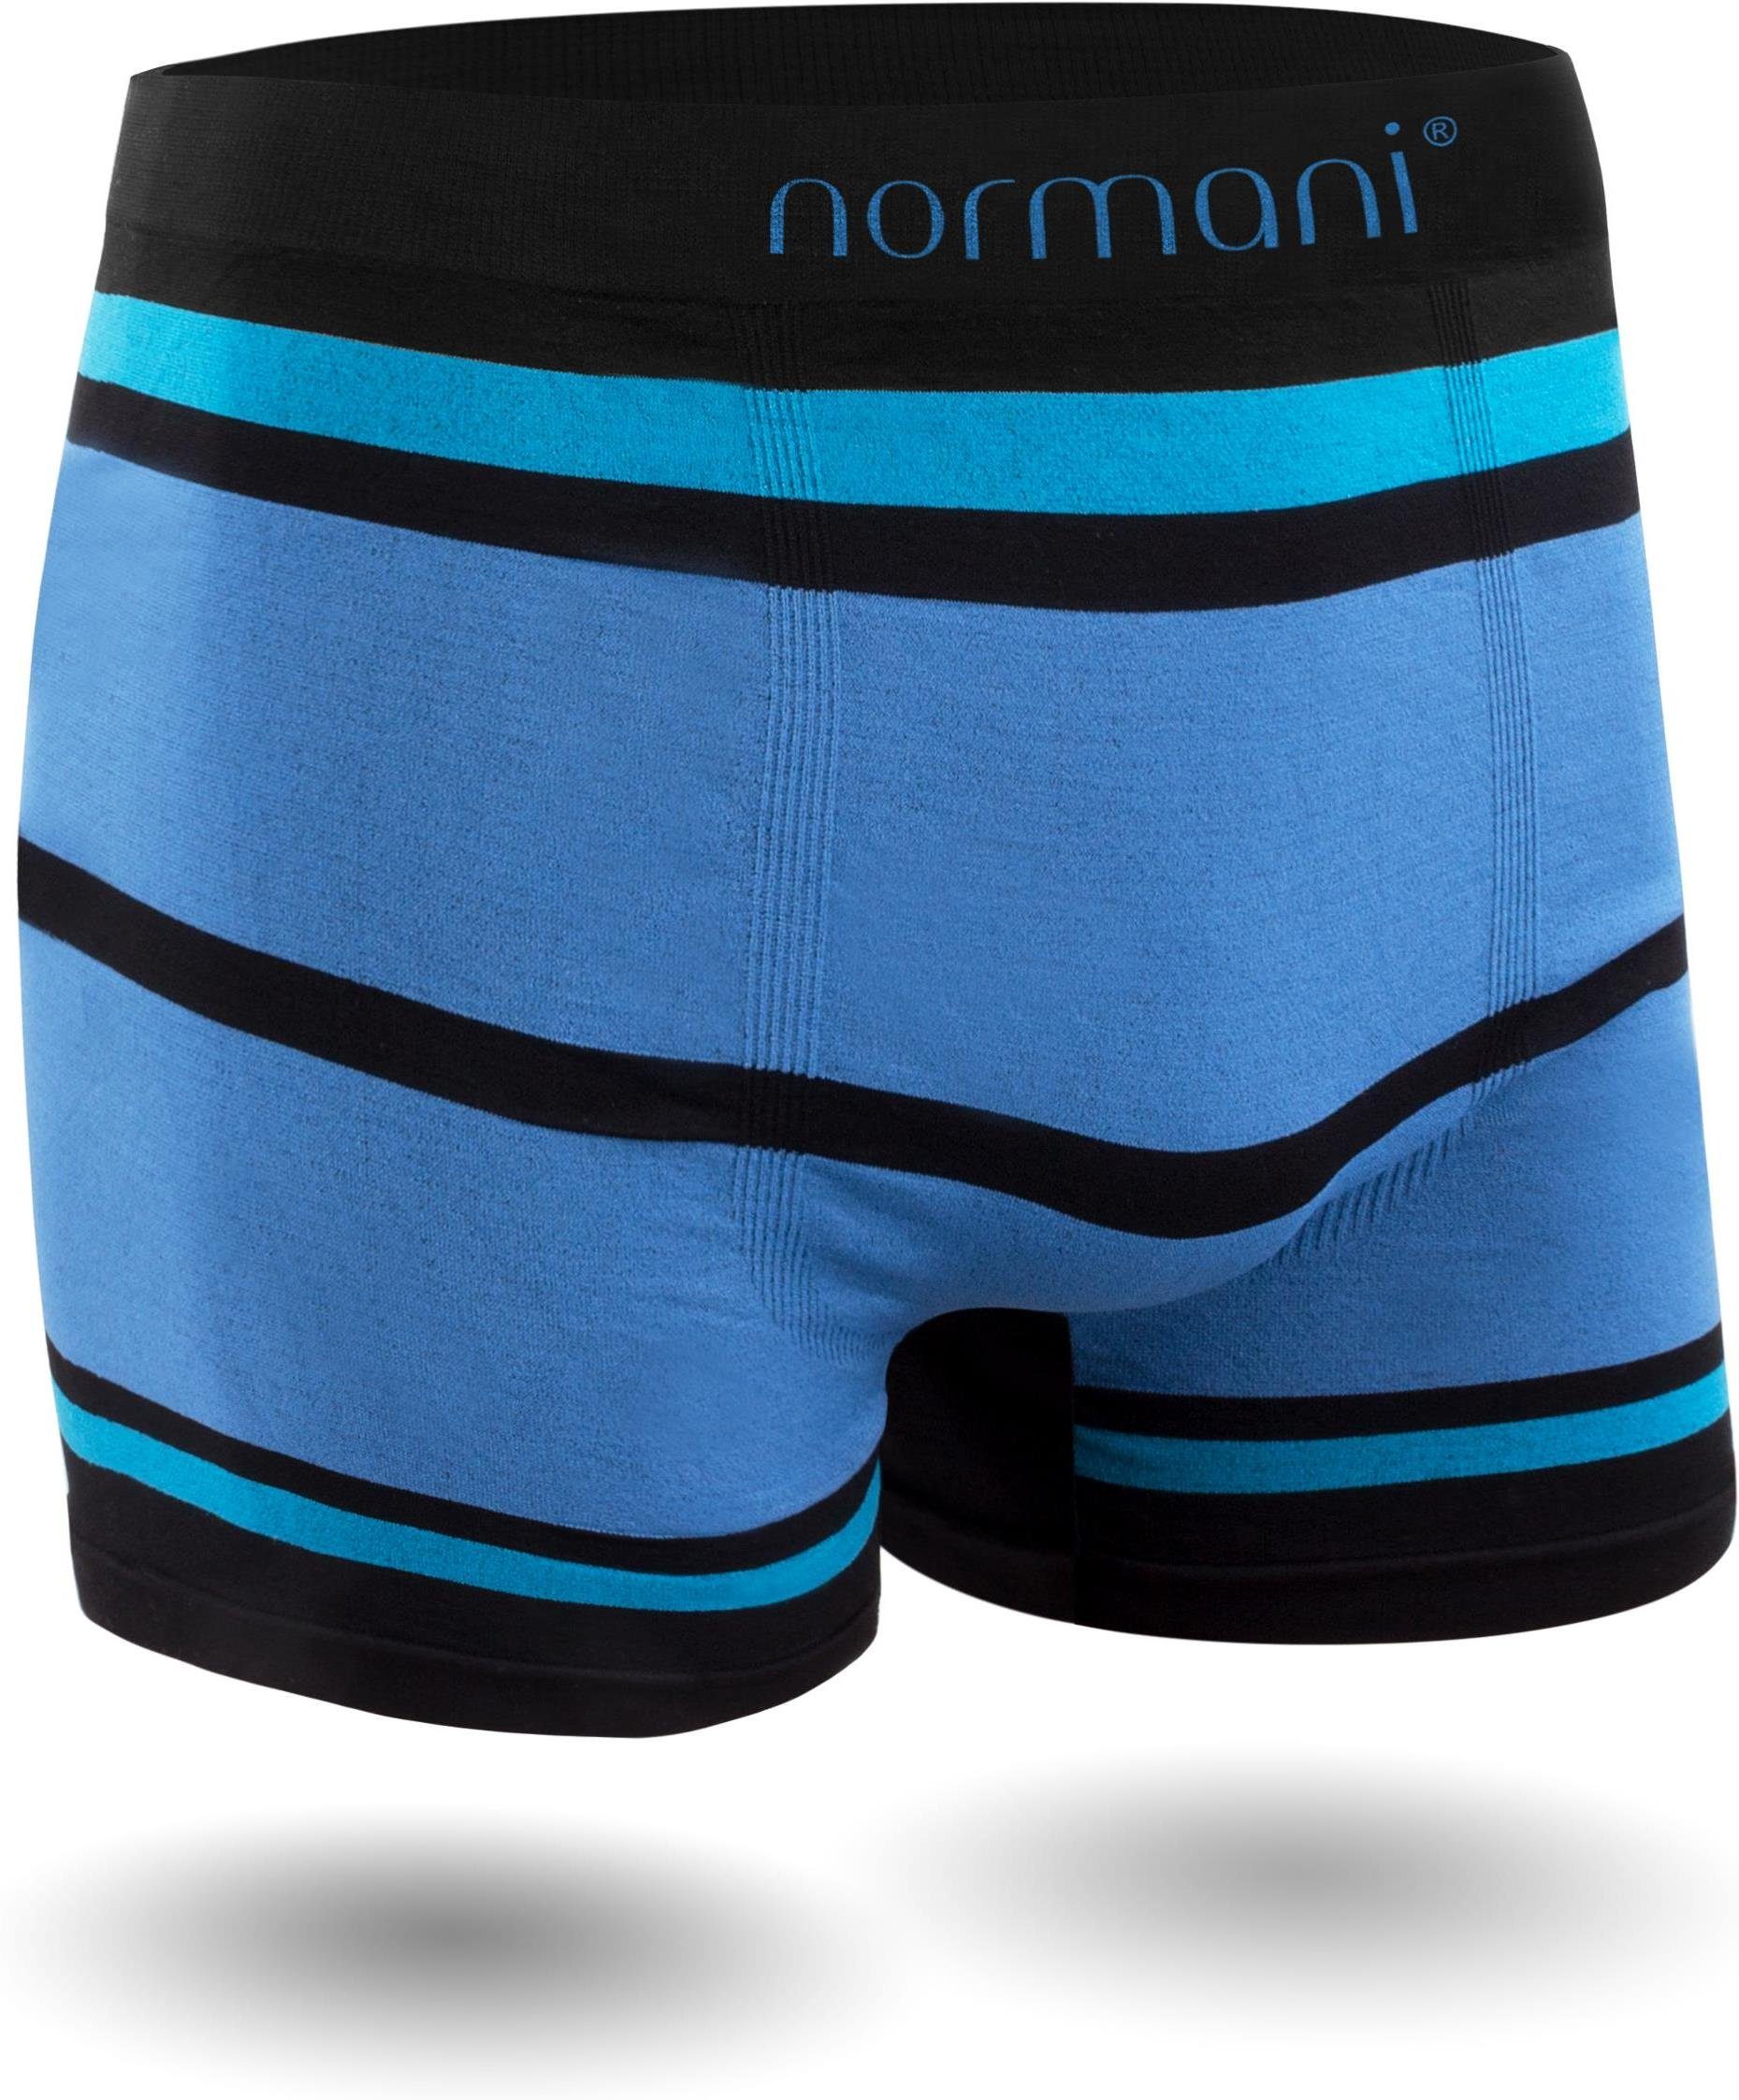 schnell Herren Unterhosen Boxer Material aus Retro trocknendem Blau/Hellblau normani Sport